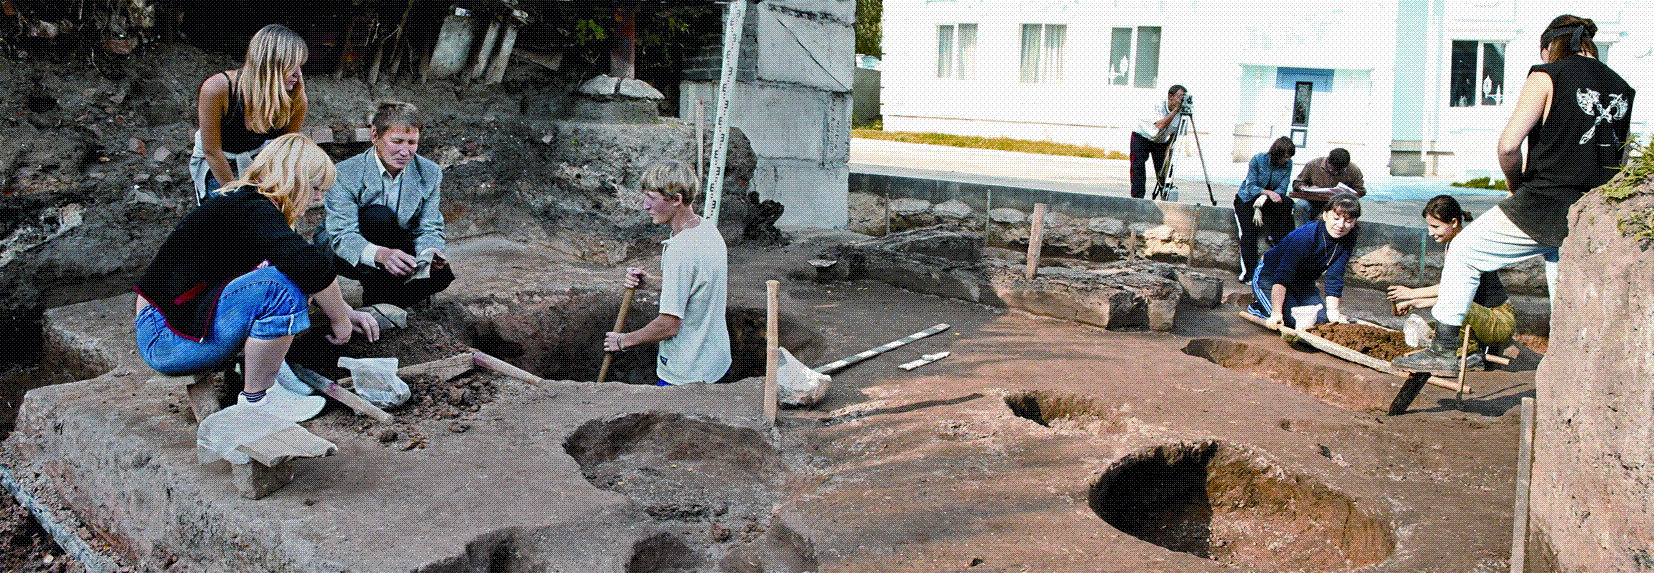 "Археологические раскопки. Чебоксары. 2005."